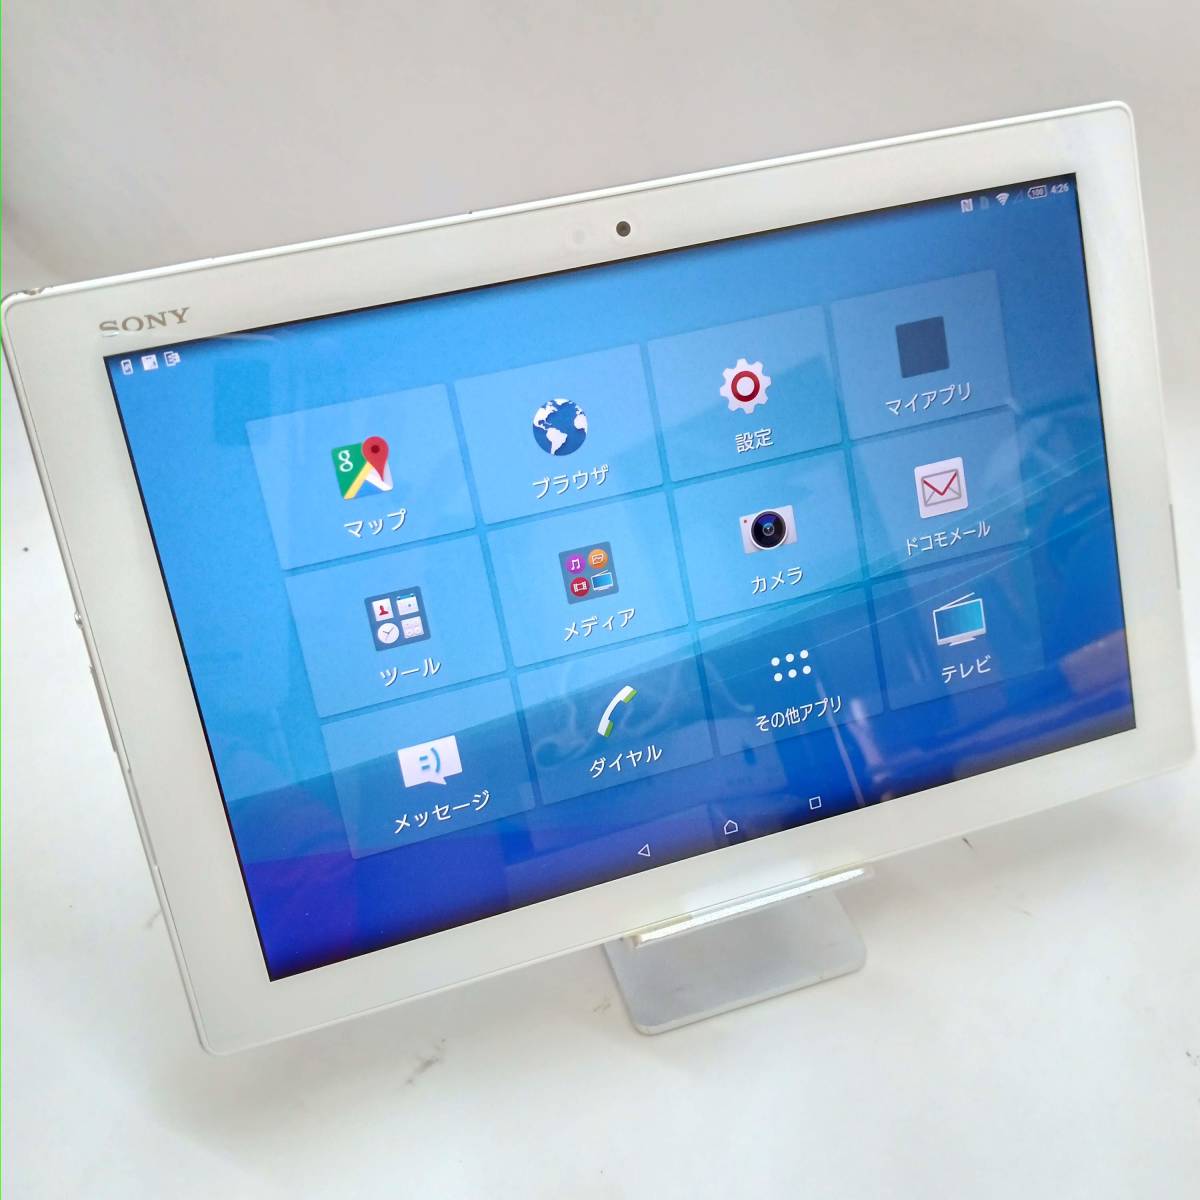 ☆ 送料一律185円 美品 SONY XPERIA Z4 Tablet SO-05G docomo Android